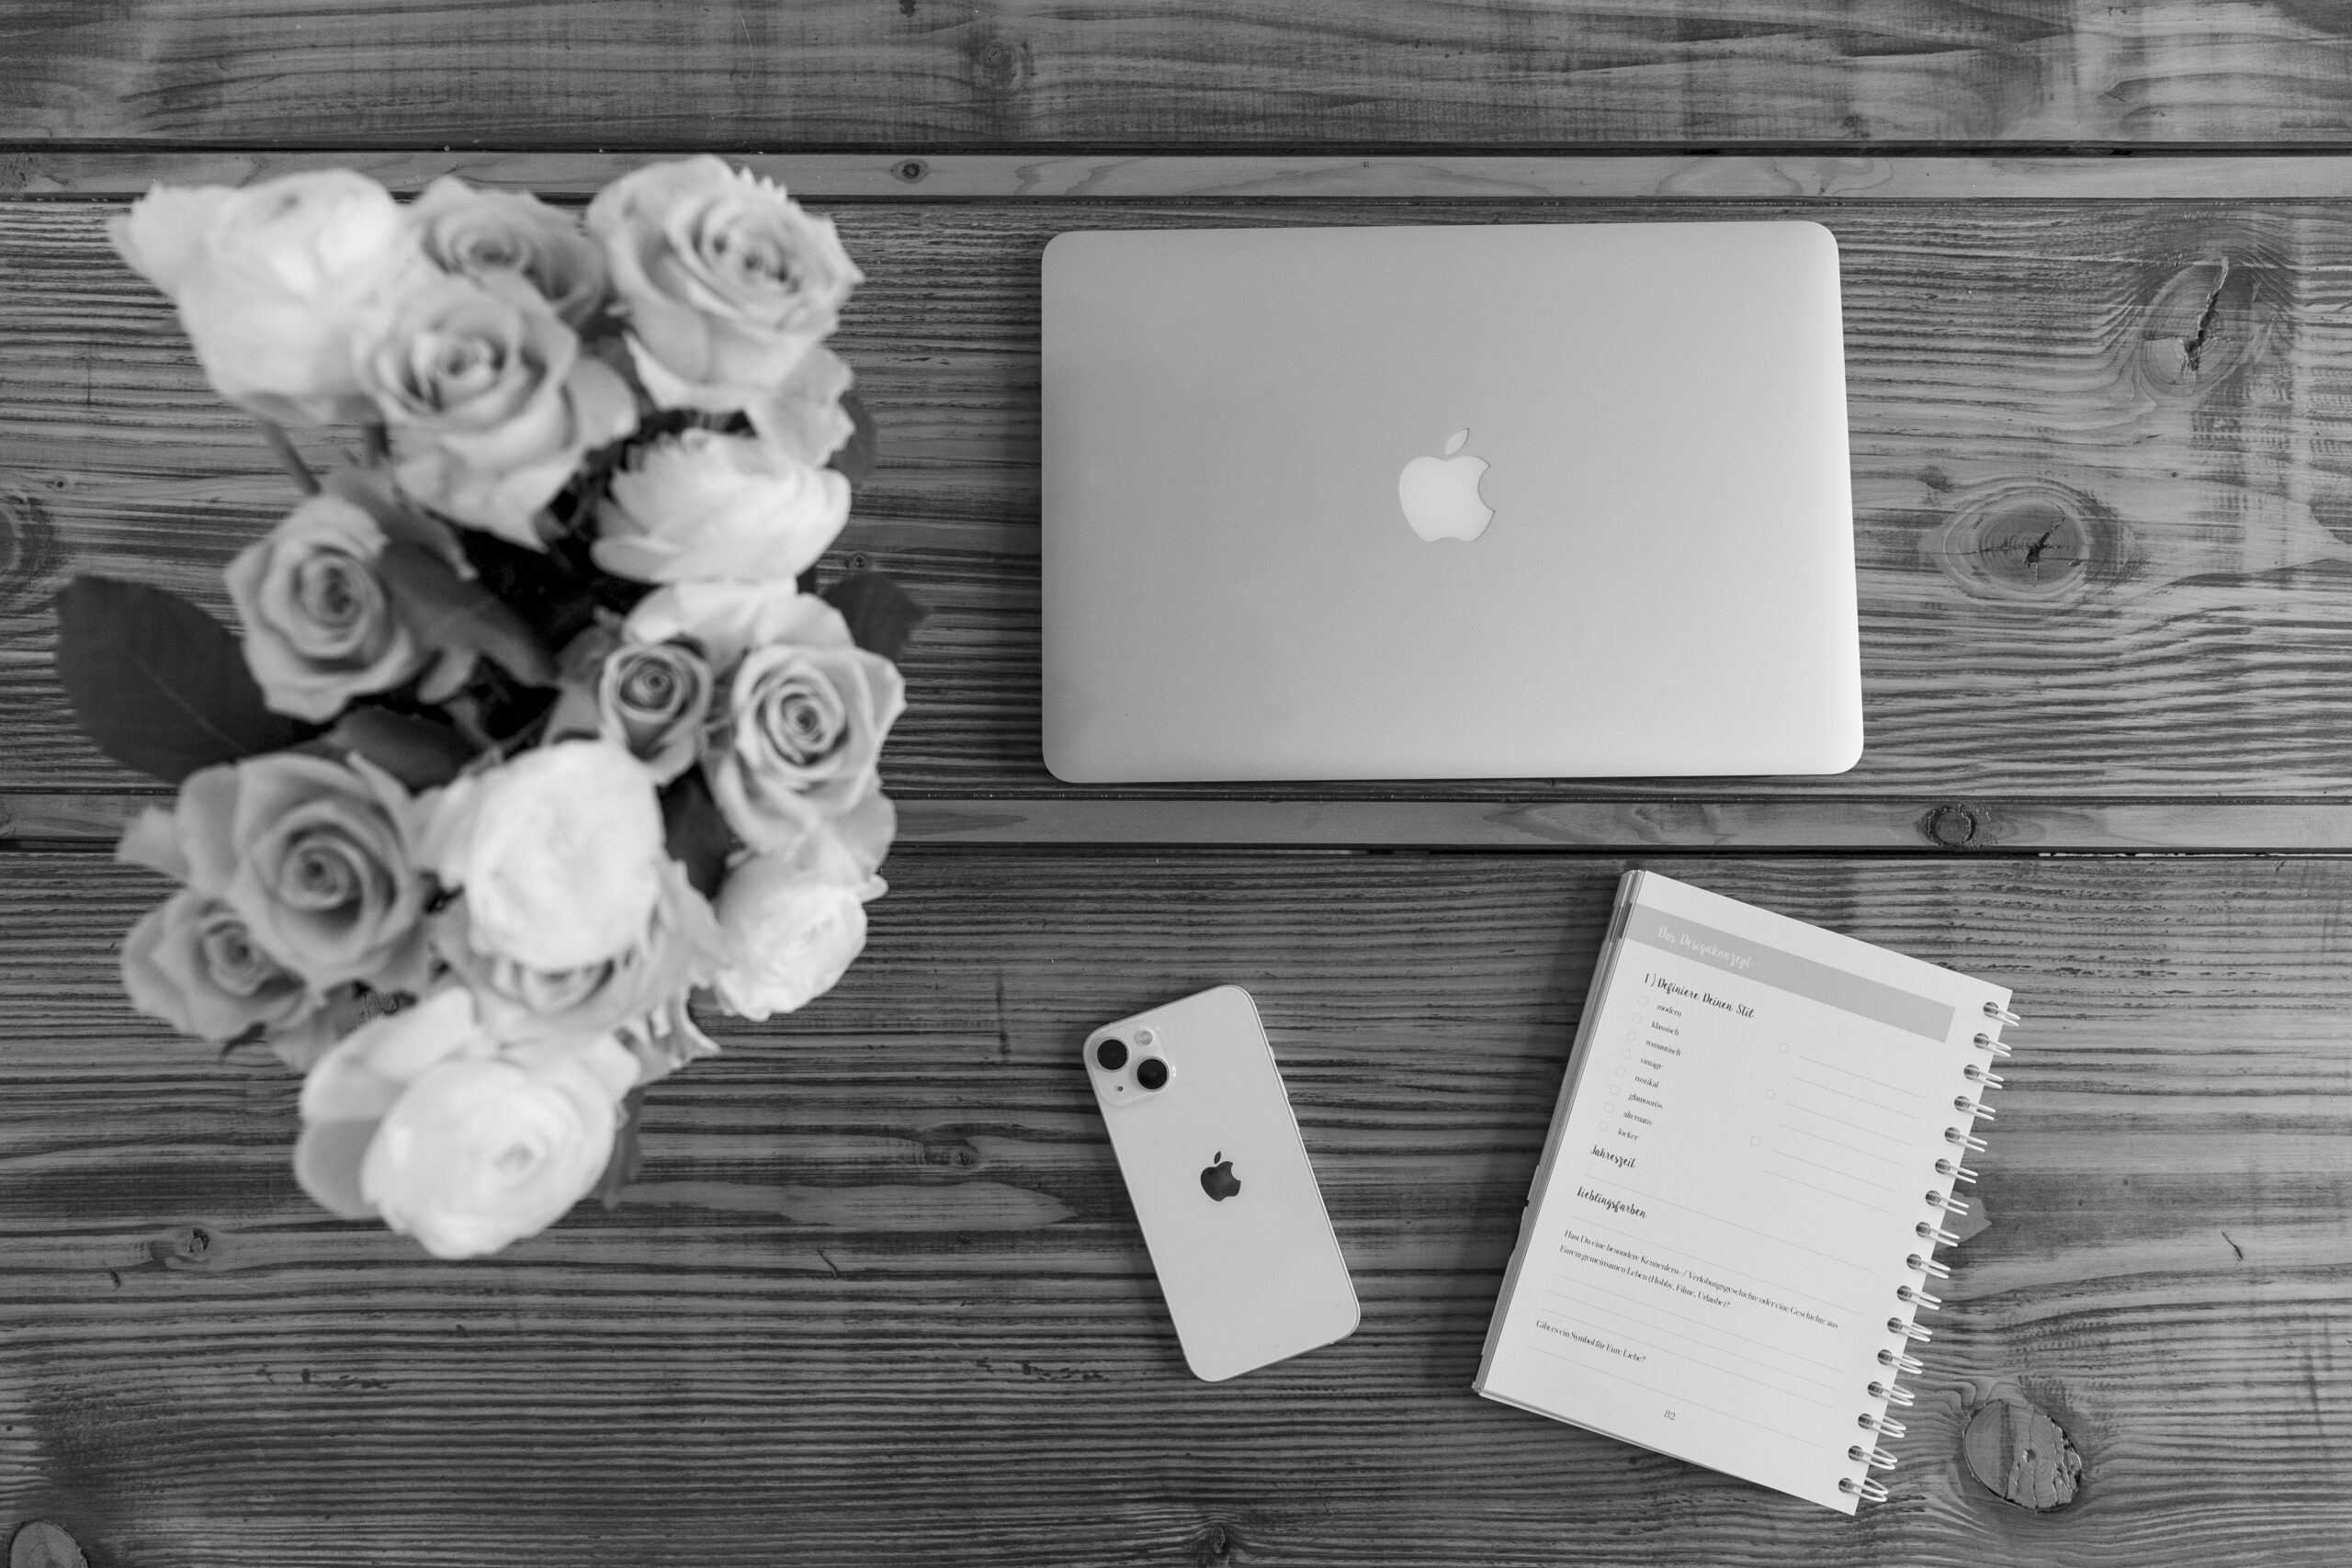 Arbeitsutensilien in schwarz weiß / MacBook und IPhone mit Blumenstrauß